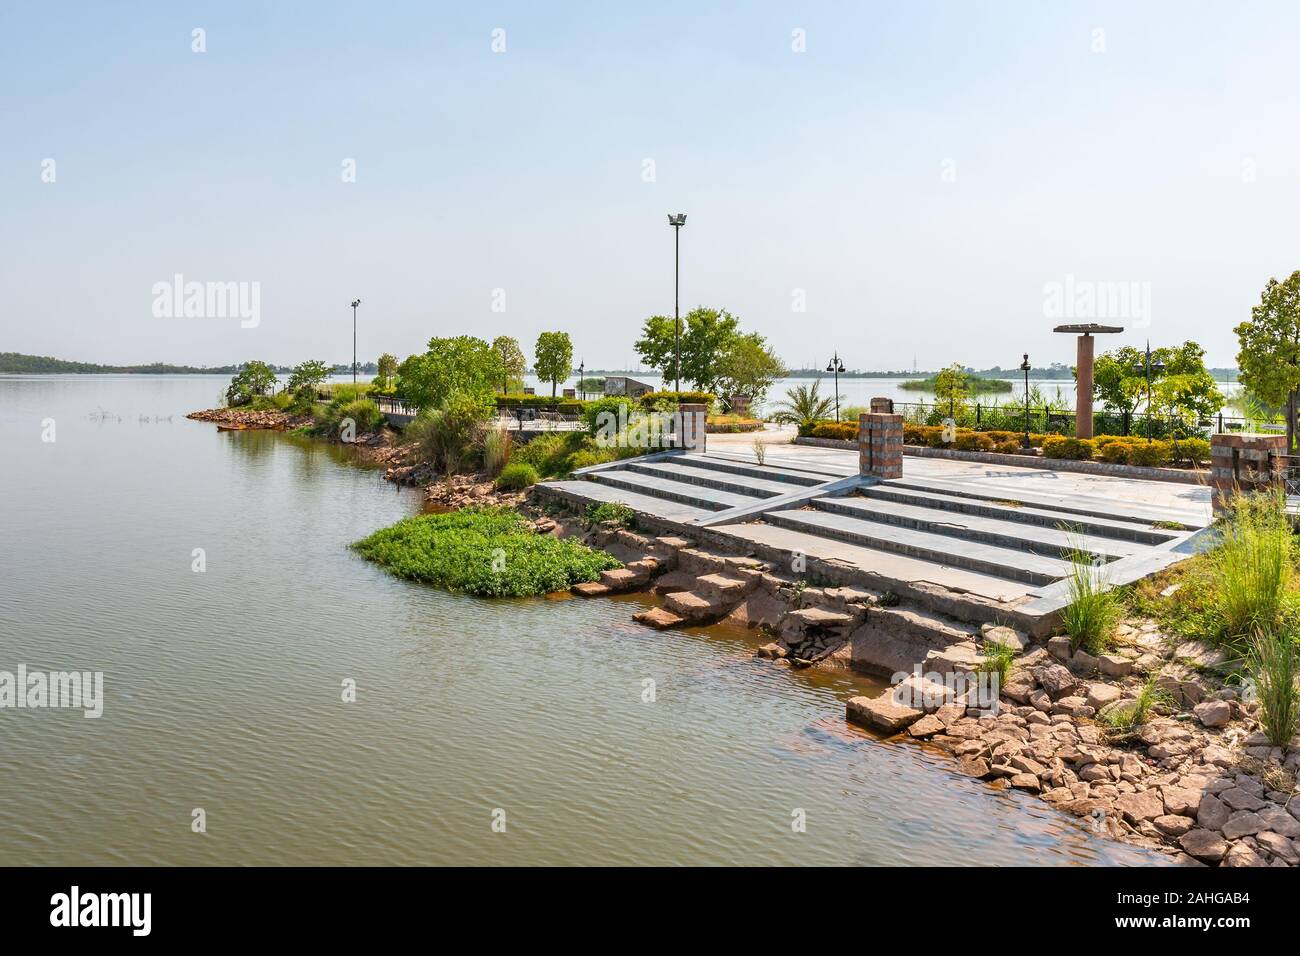 Islamabad, vue sur le lac pittoresque parc vue à couper le souffle de la rive sur un ciel bleu ensoleillé Jour Banque D'Images